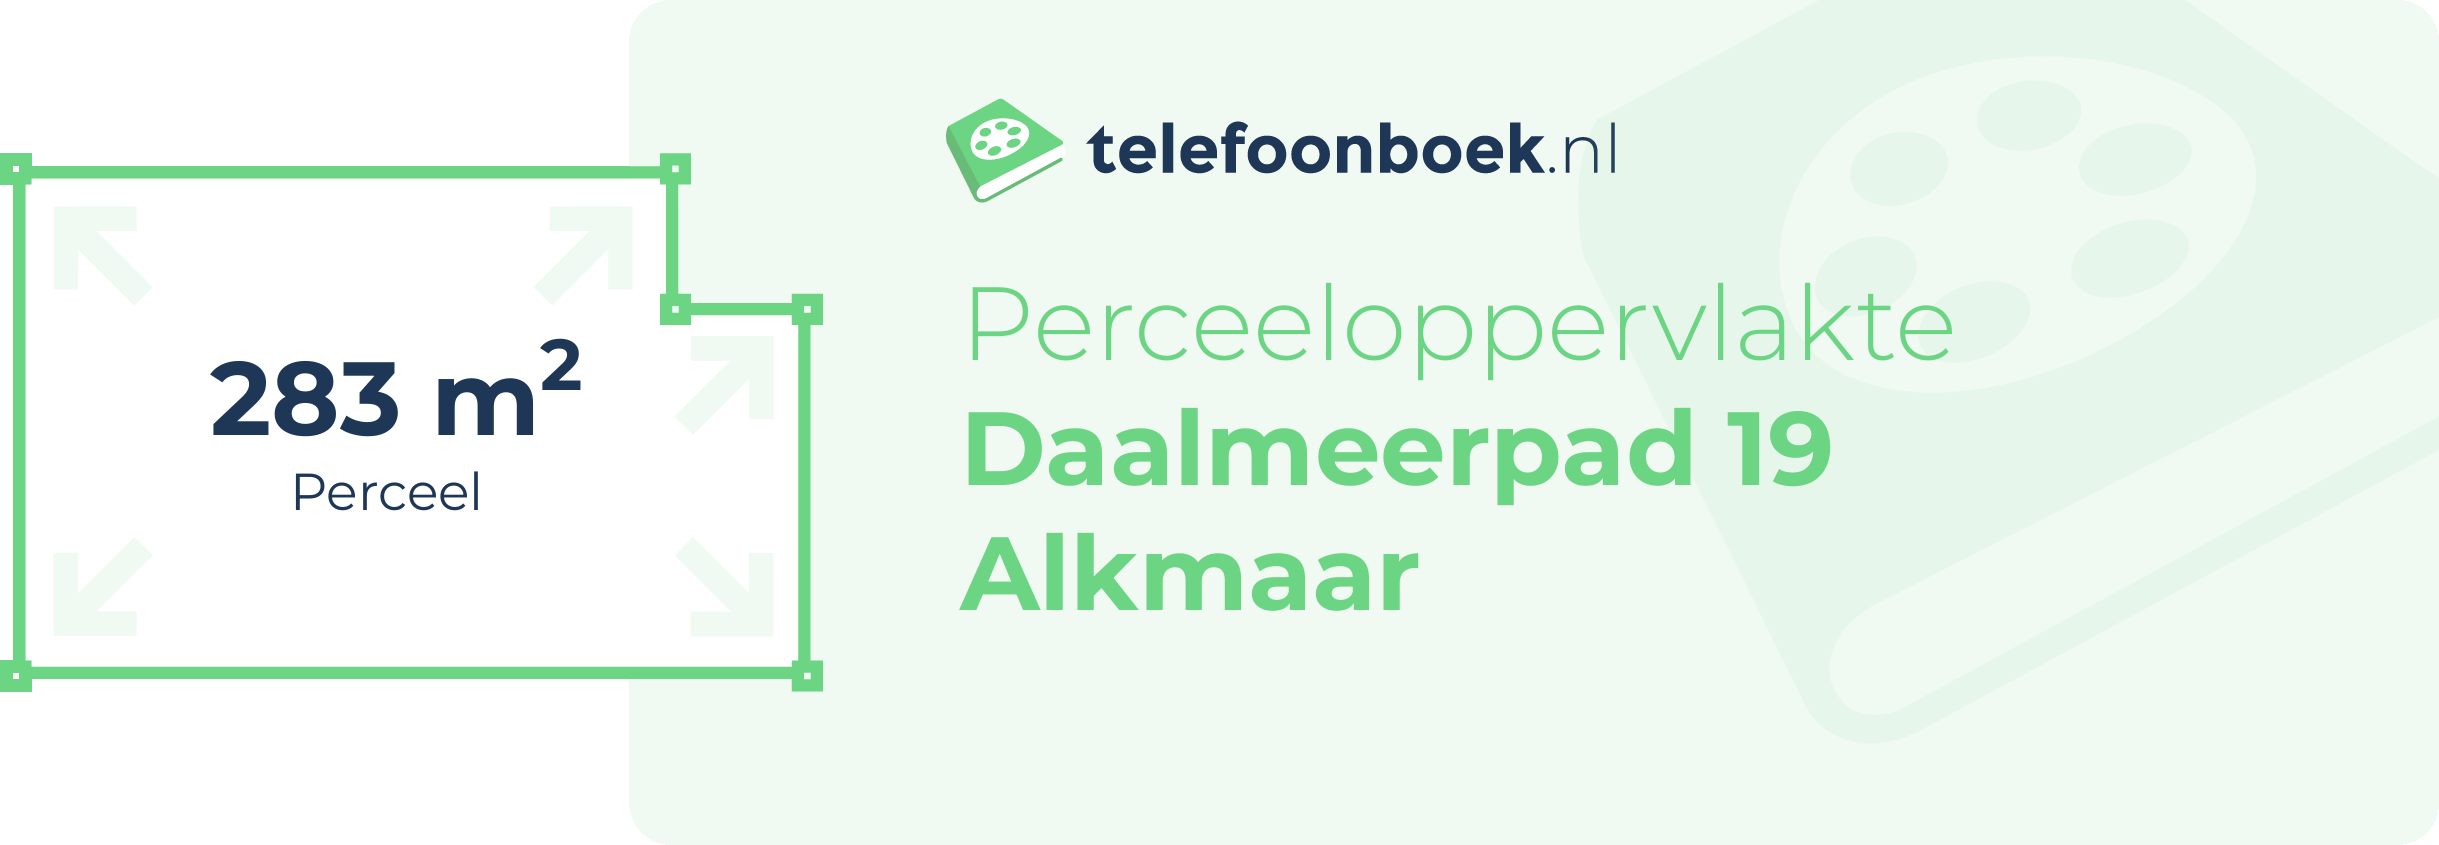 Perceeloppervlakte Daalmeerpad 19 Alkmaar